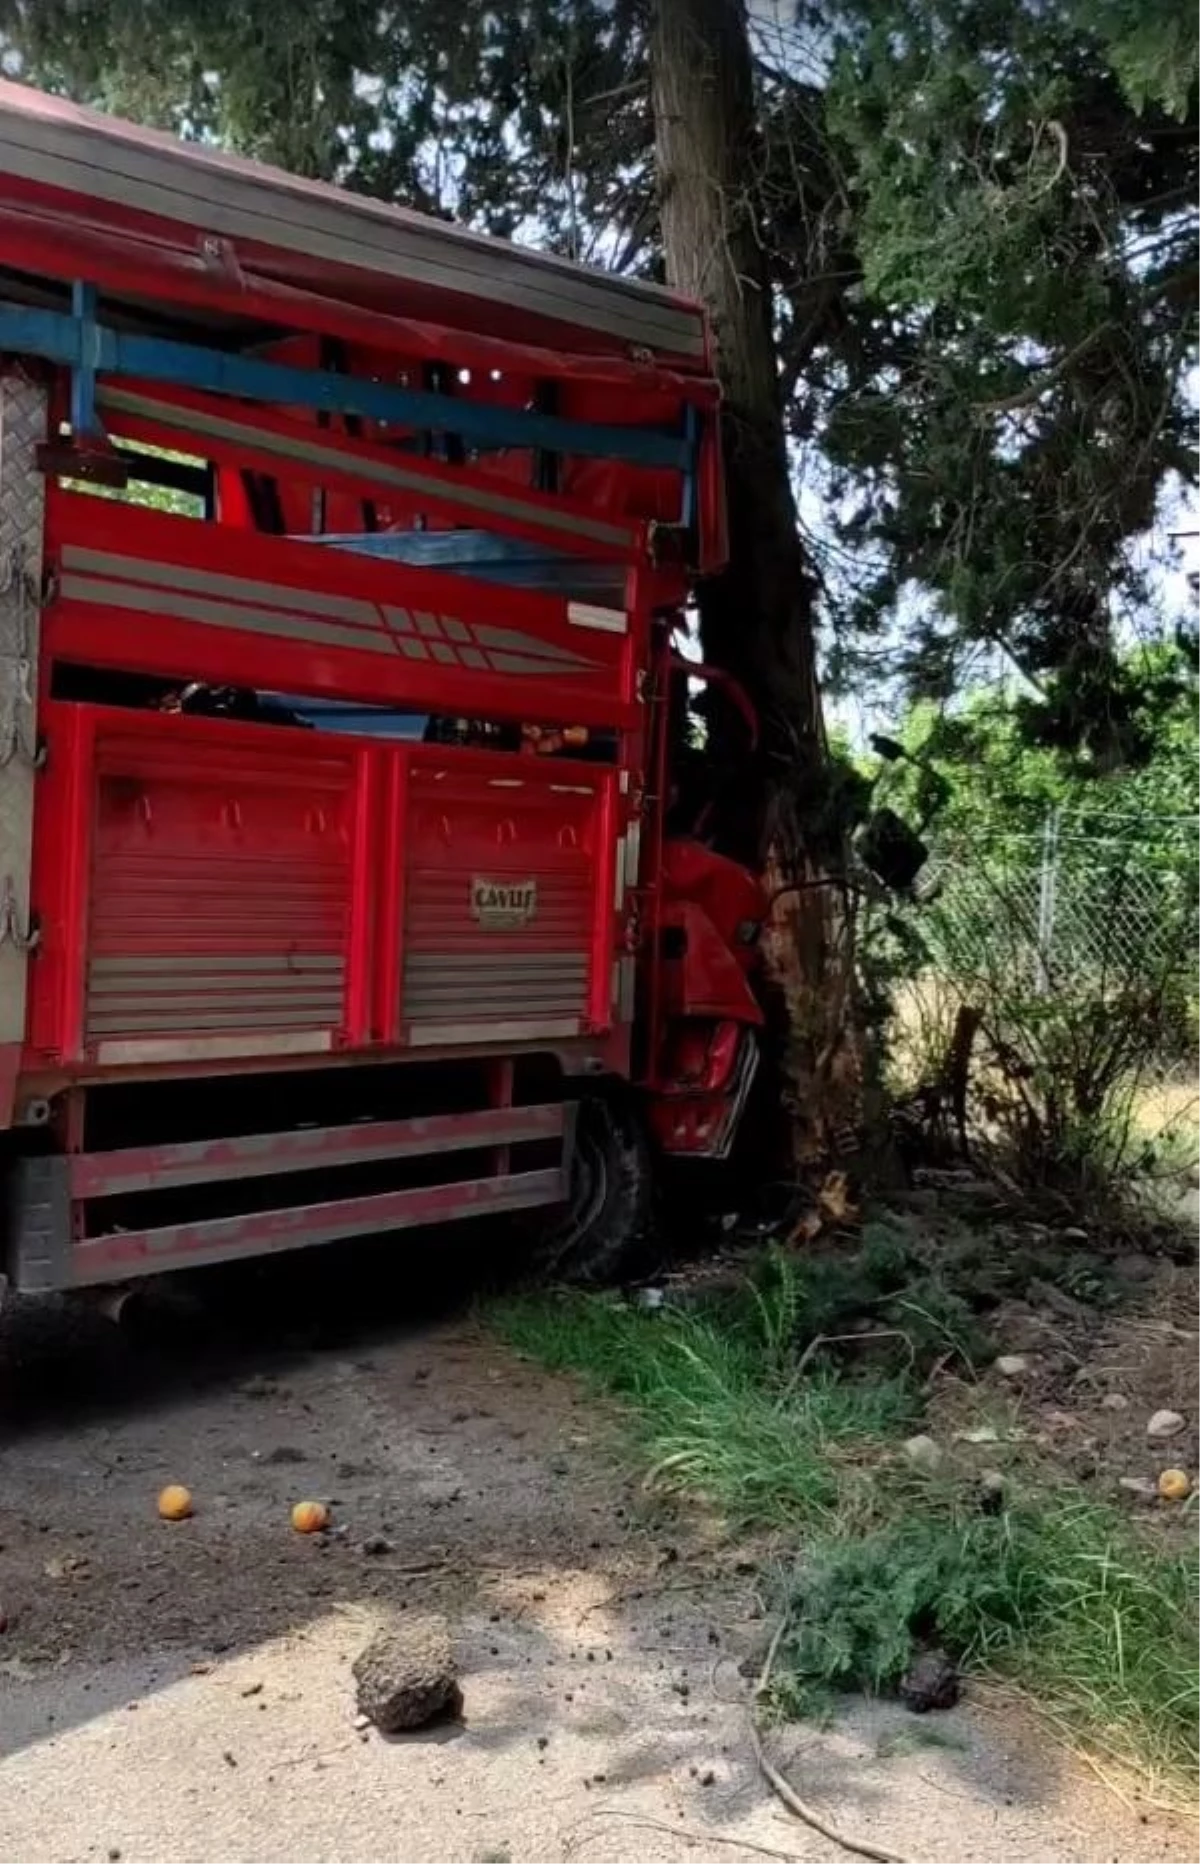 Meyve yüklü kamyonet ağaca çarptı: 1 ölü, 6 yaralı